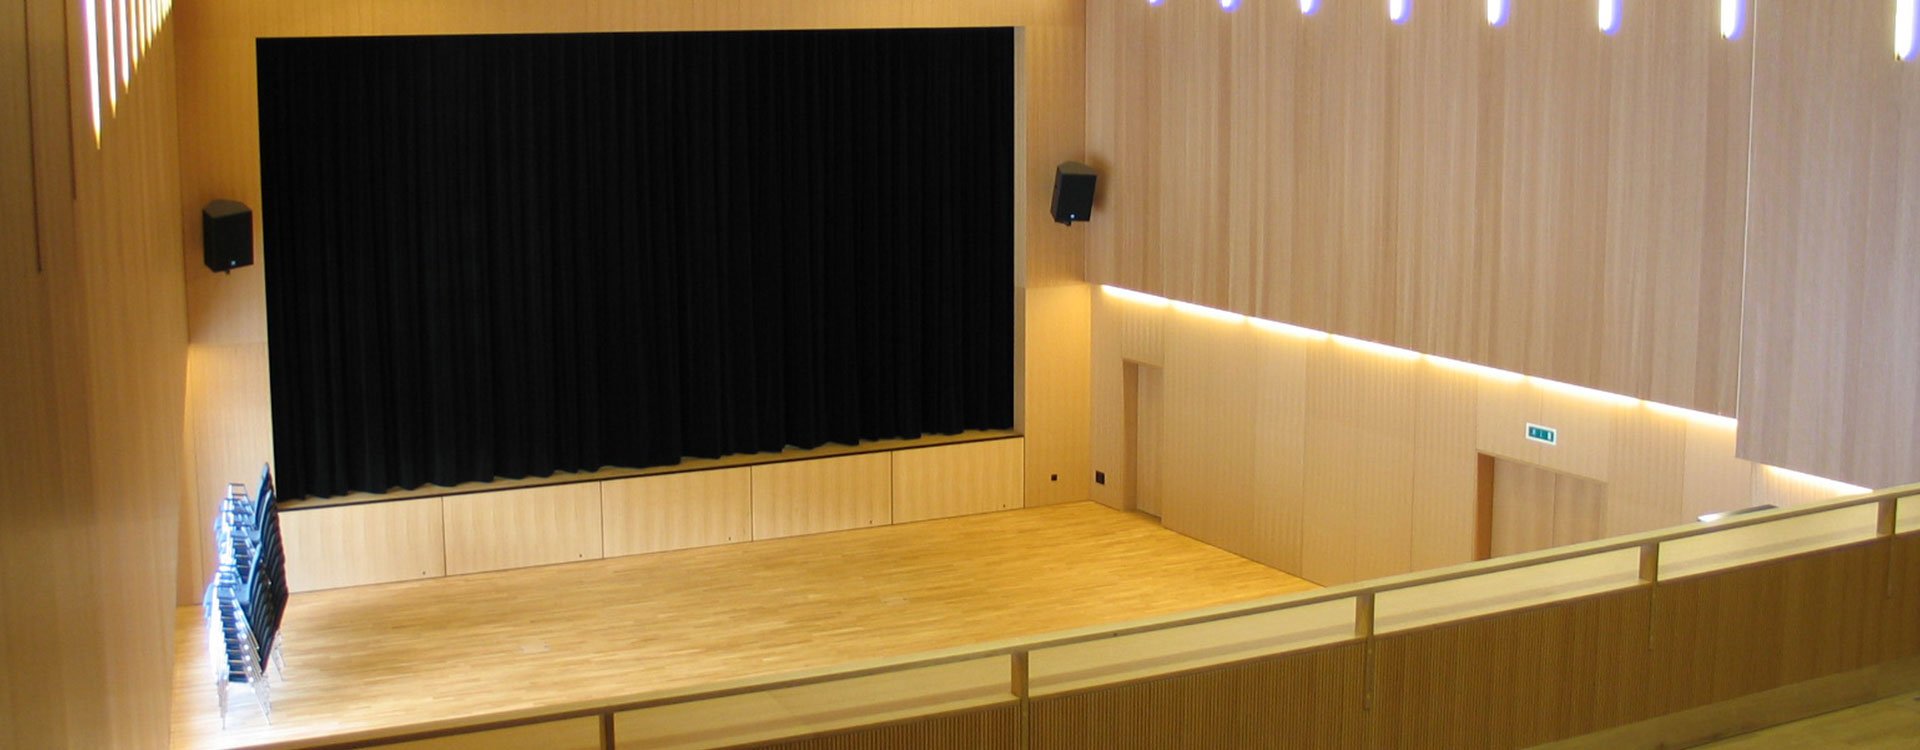 Eventhalle, Workshop, Tagungsraum und Kongressraum in Flims.